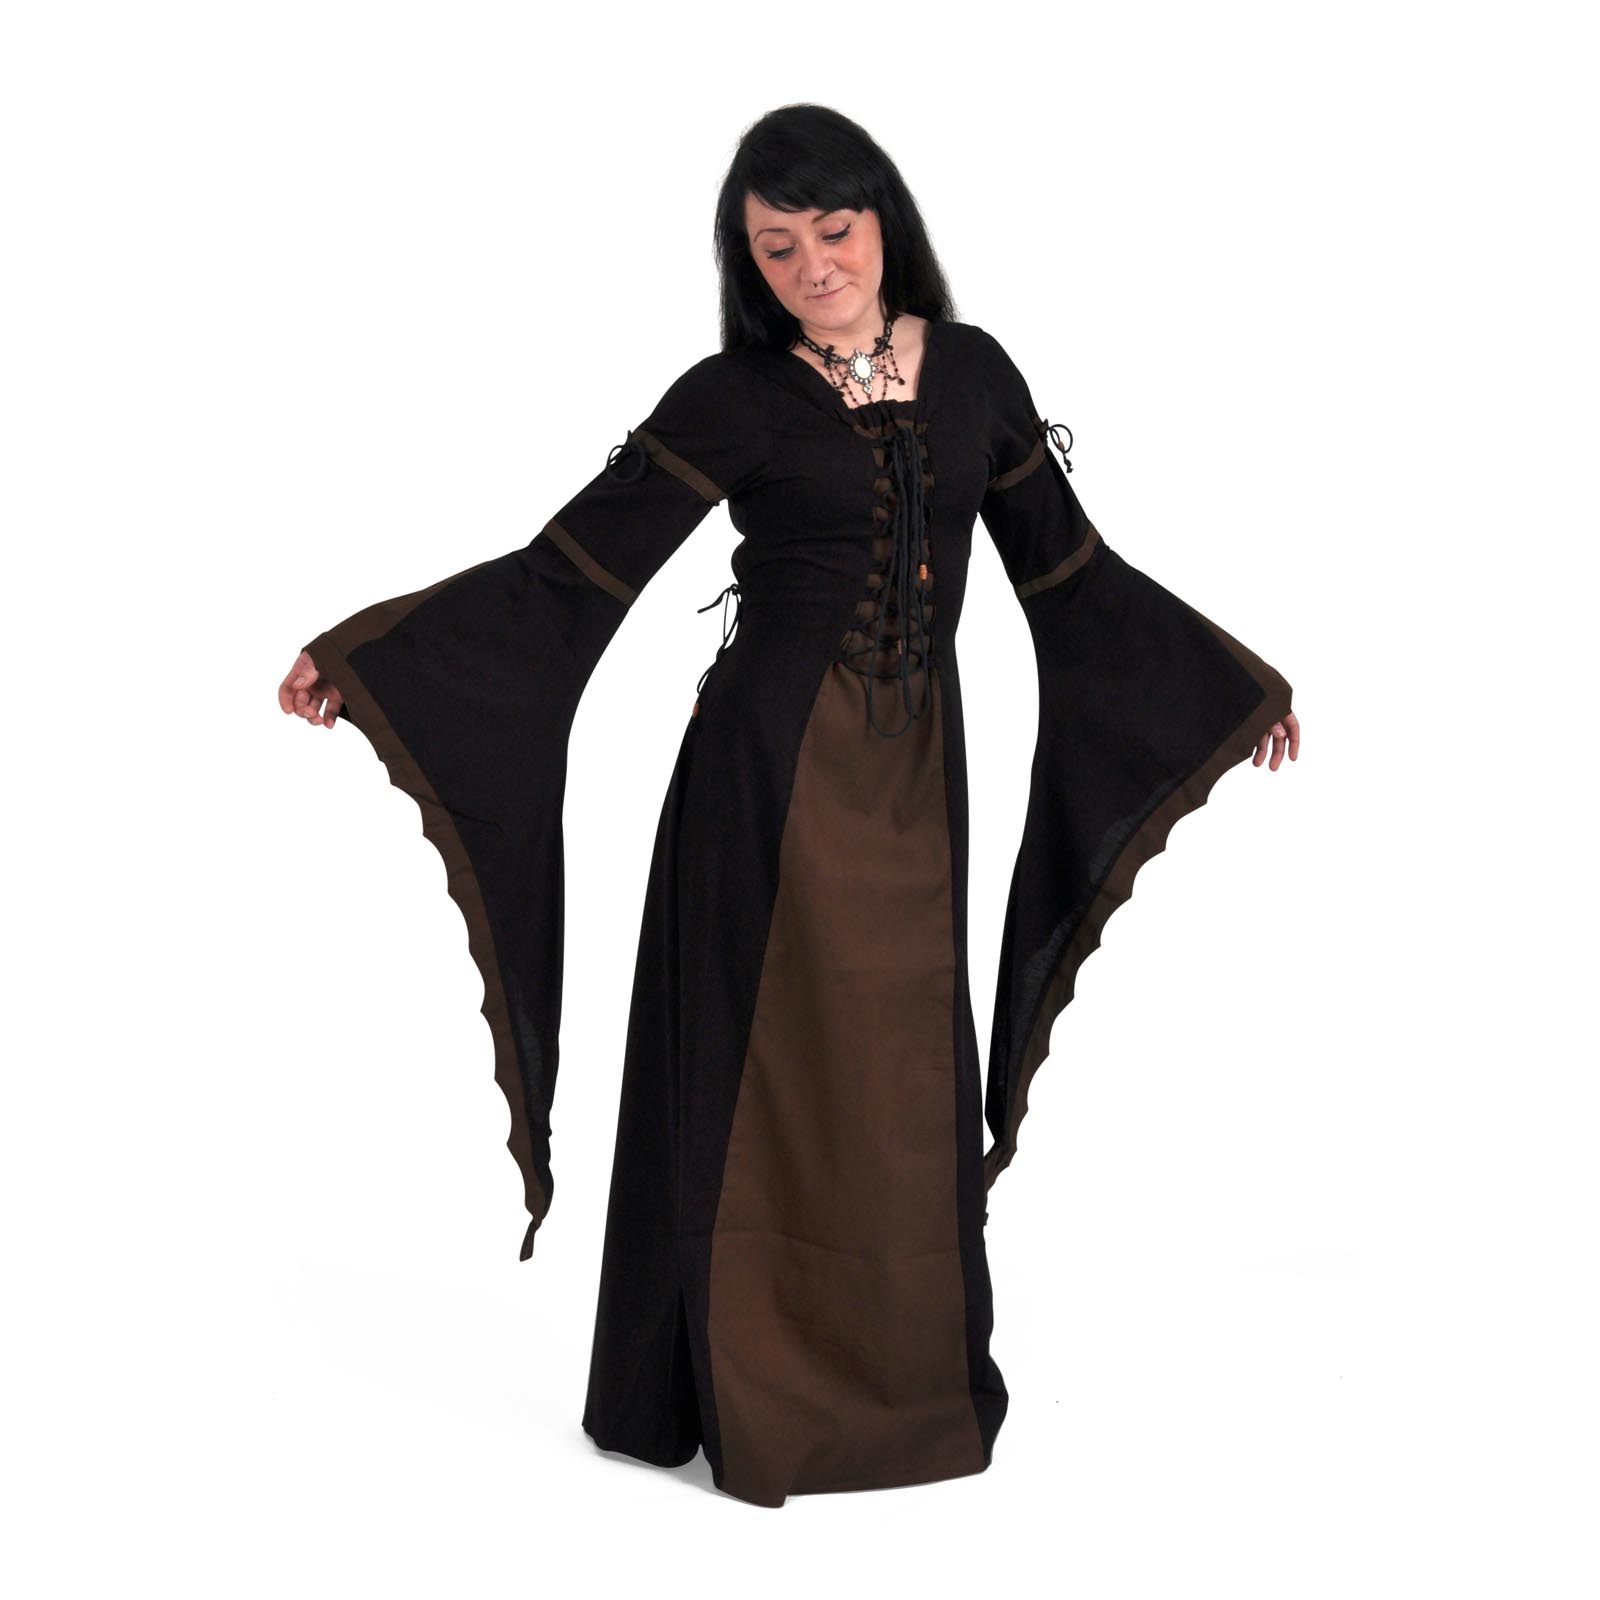 Leona - Mittelalterkleid schwarz-braun